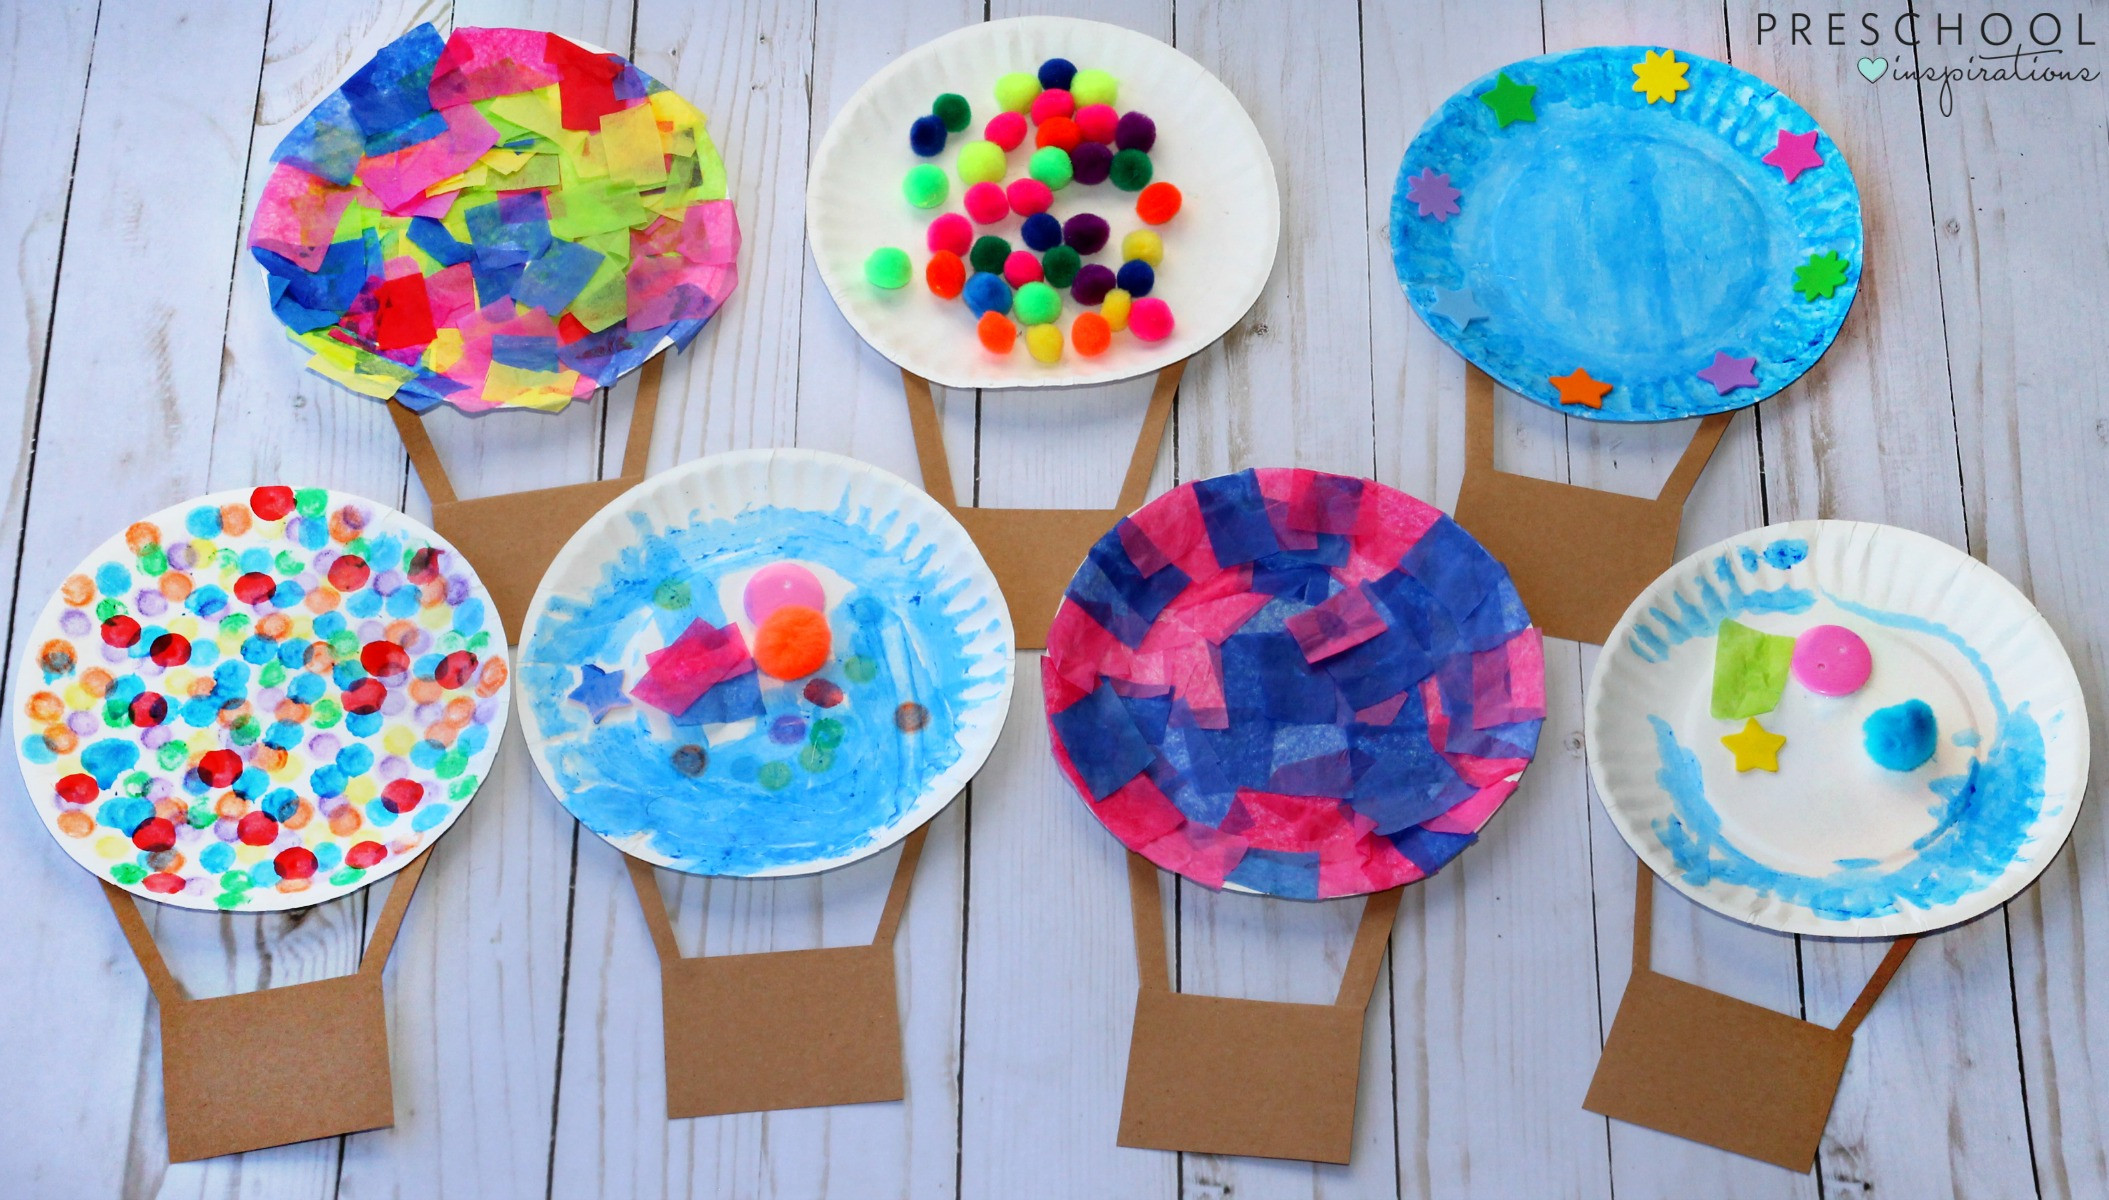 Art And Craft Ideas For Preschoolers
 Hot Air Balloon Art Activity Preschool Inspirations